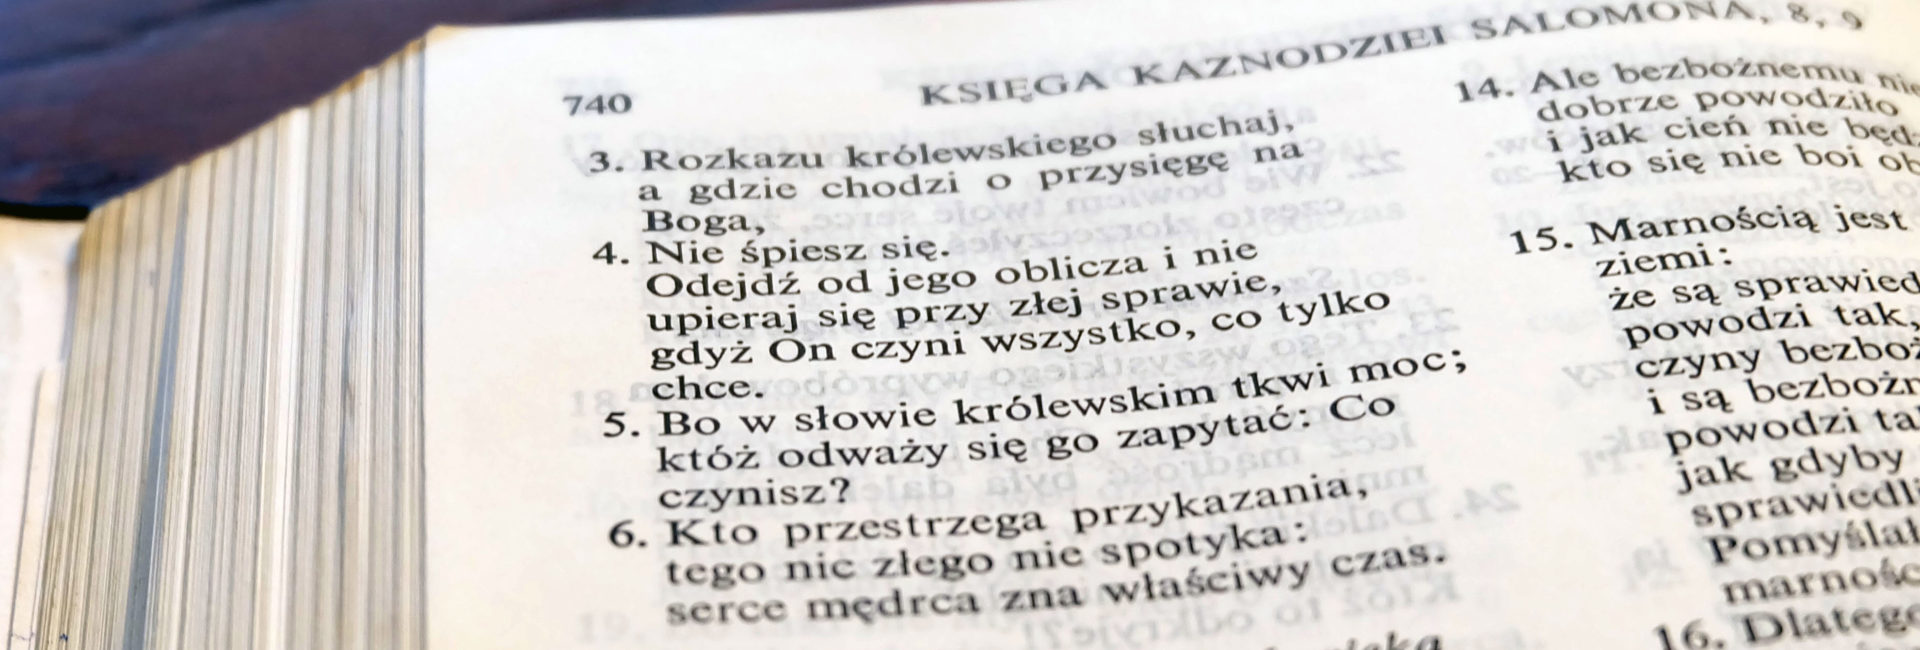 Komentarz do Księgi Koheleta cz. 26